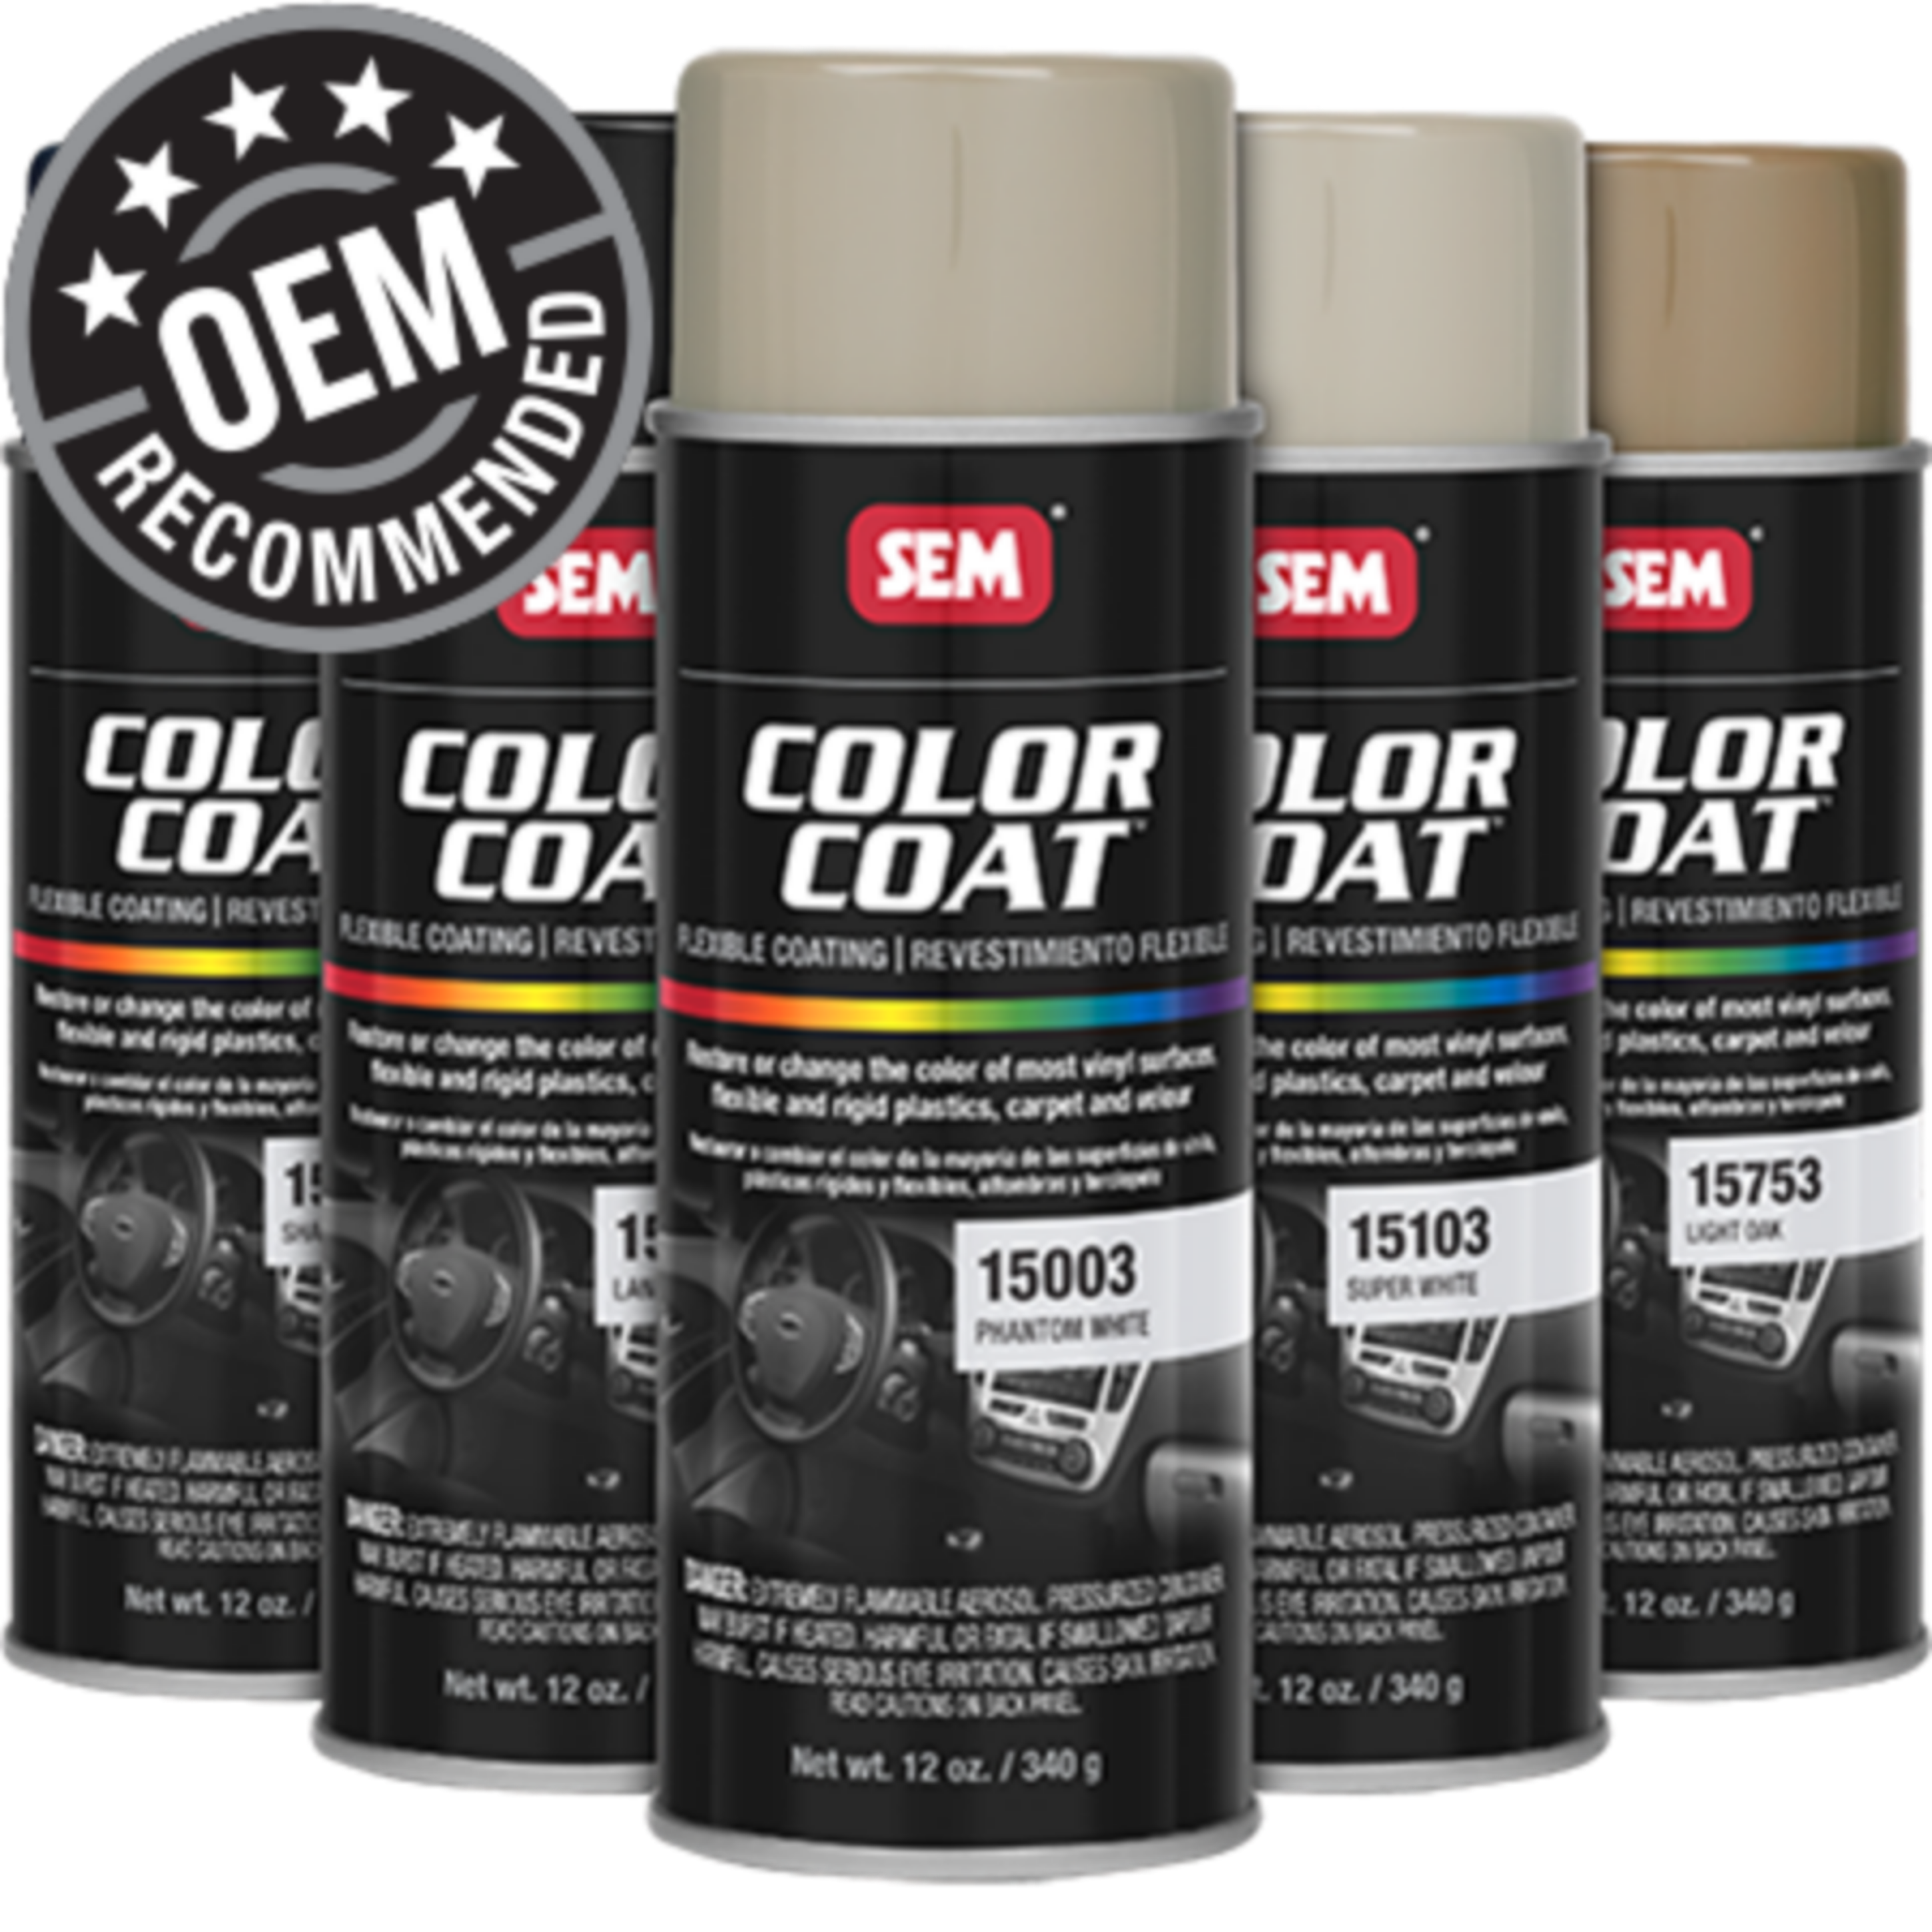 ColorBond LVP Plus Carpet Spray Paint 12 oz.